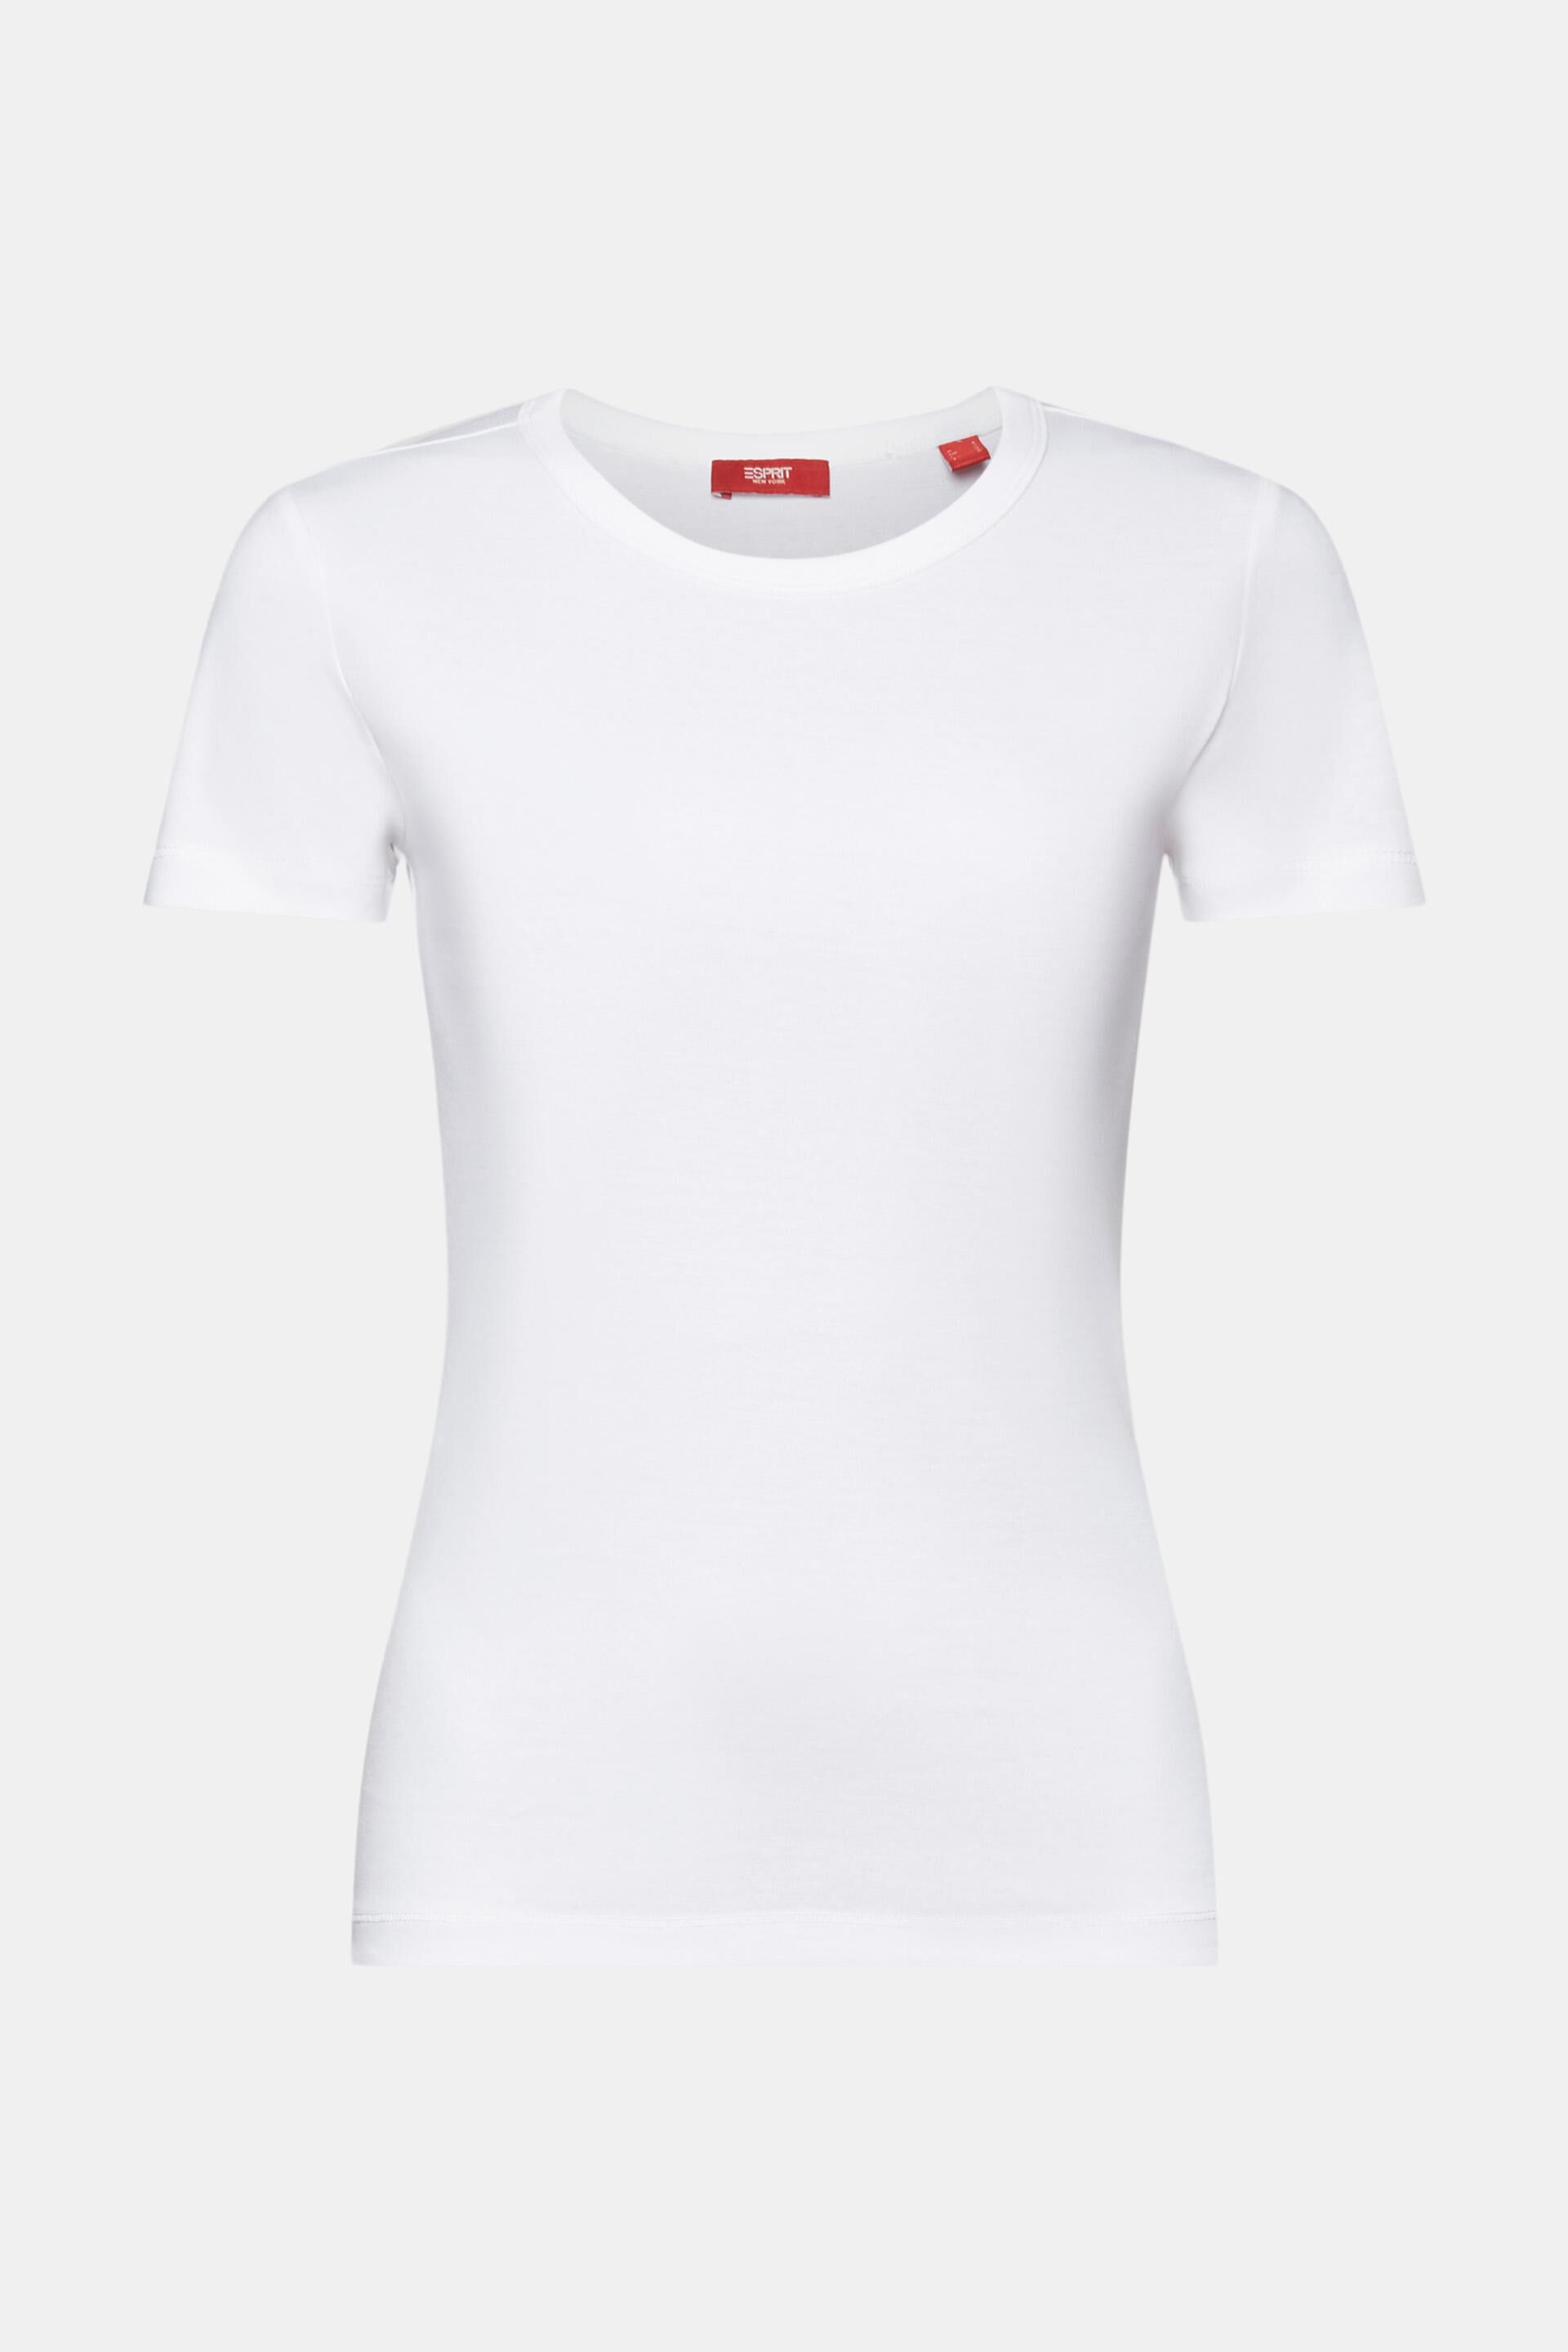 Esprit Baumwolle % mit Rundhalsausschnitt, T-Shirt 100